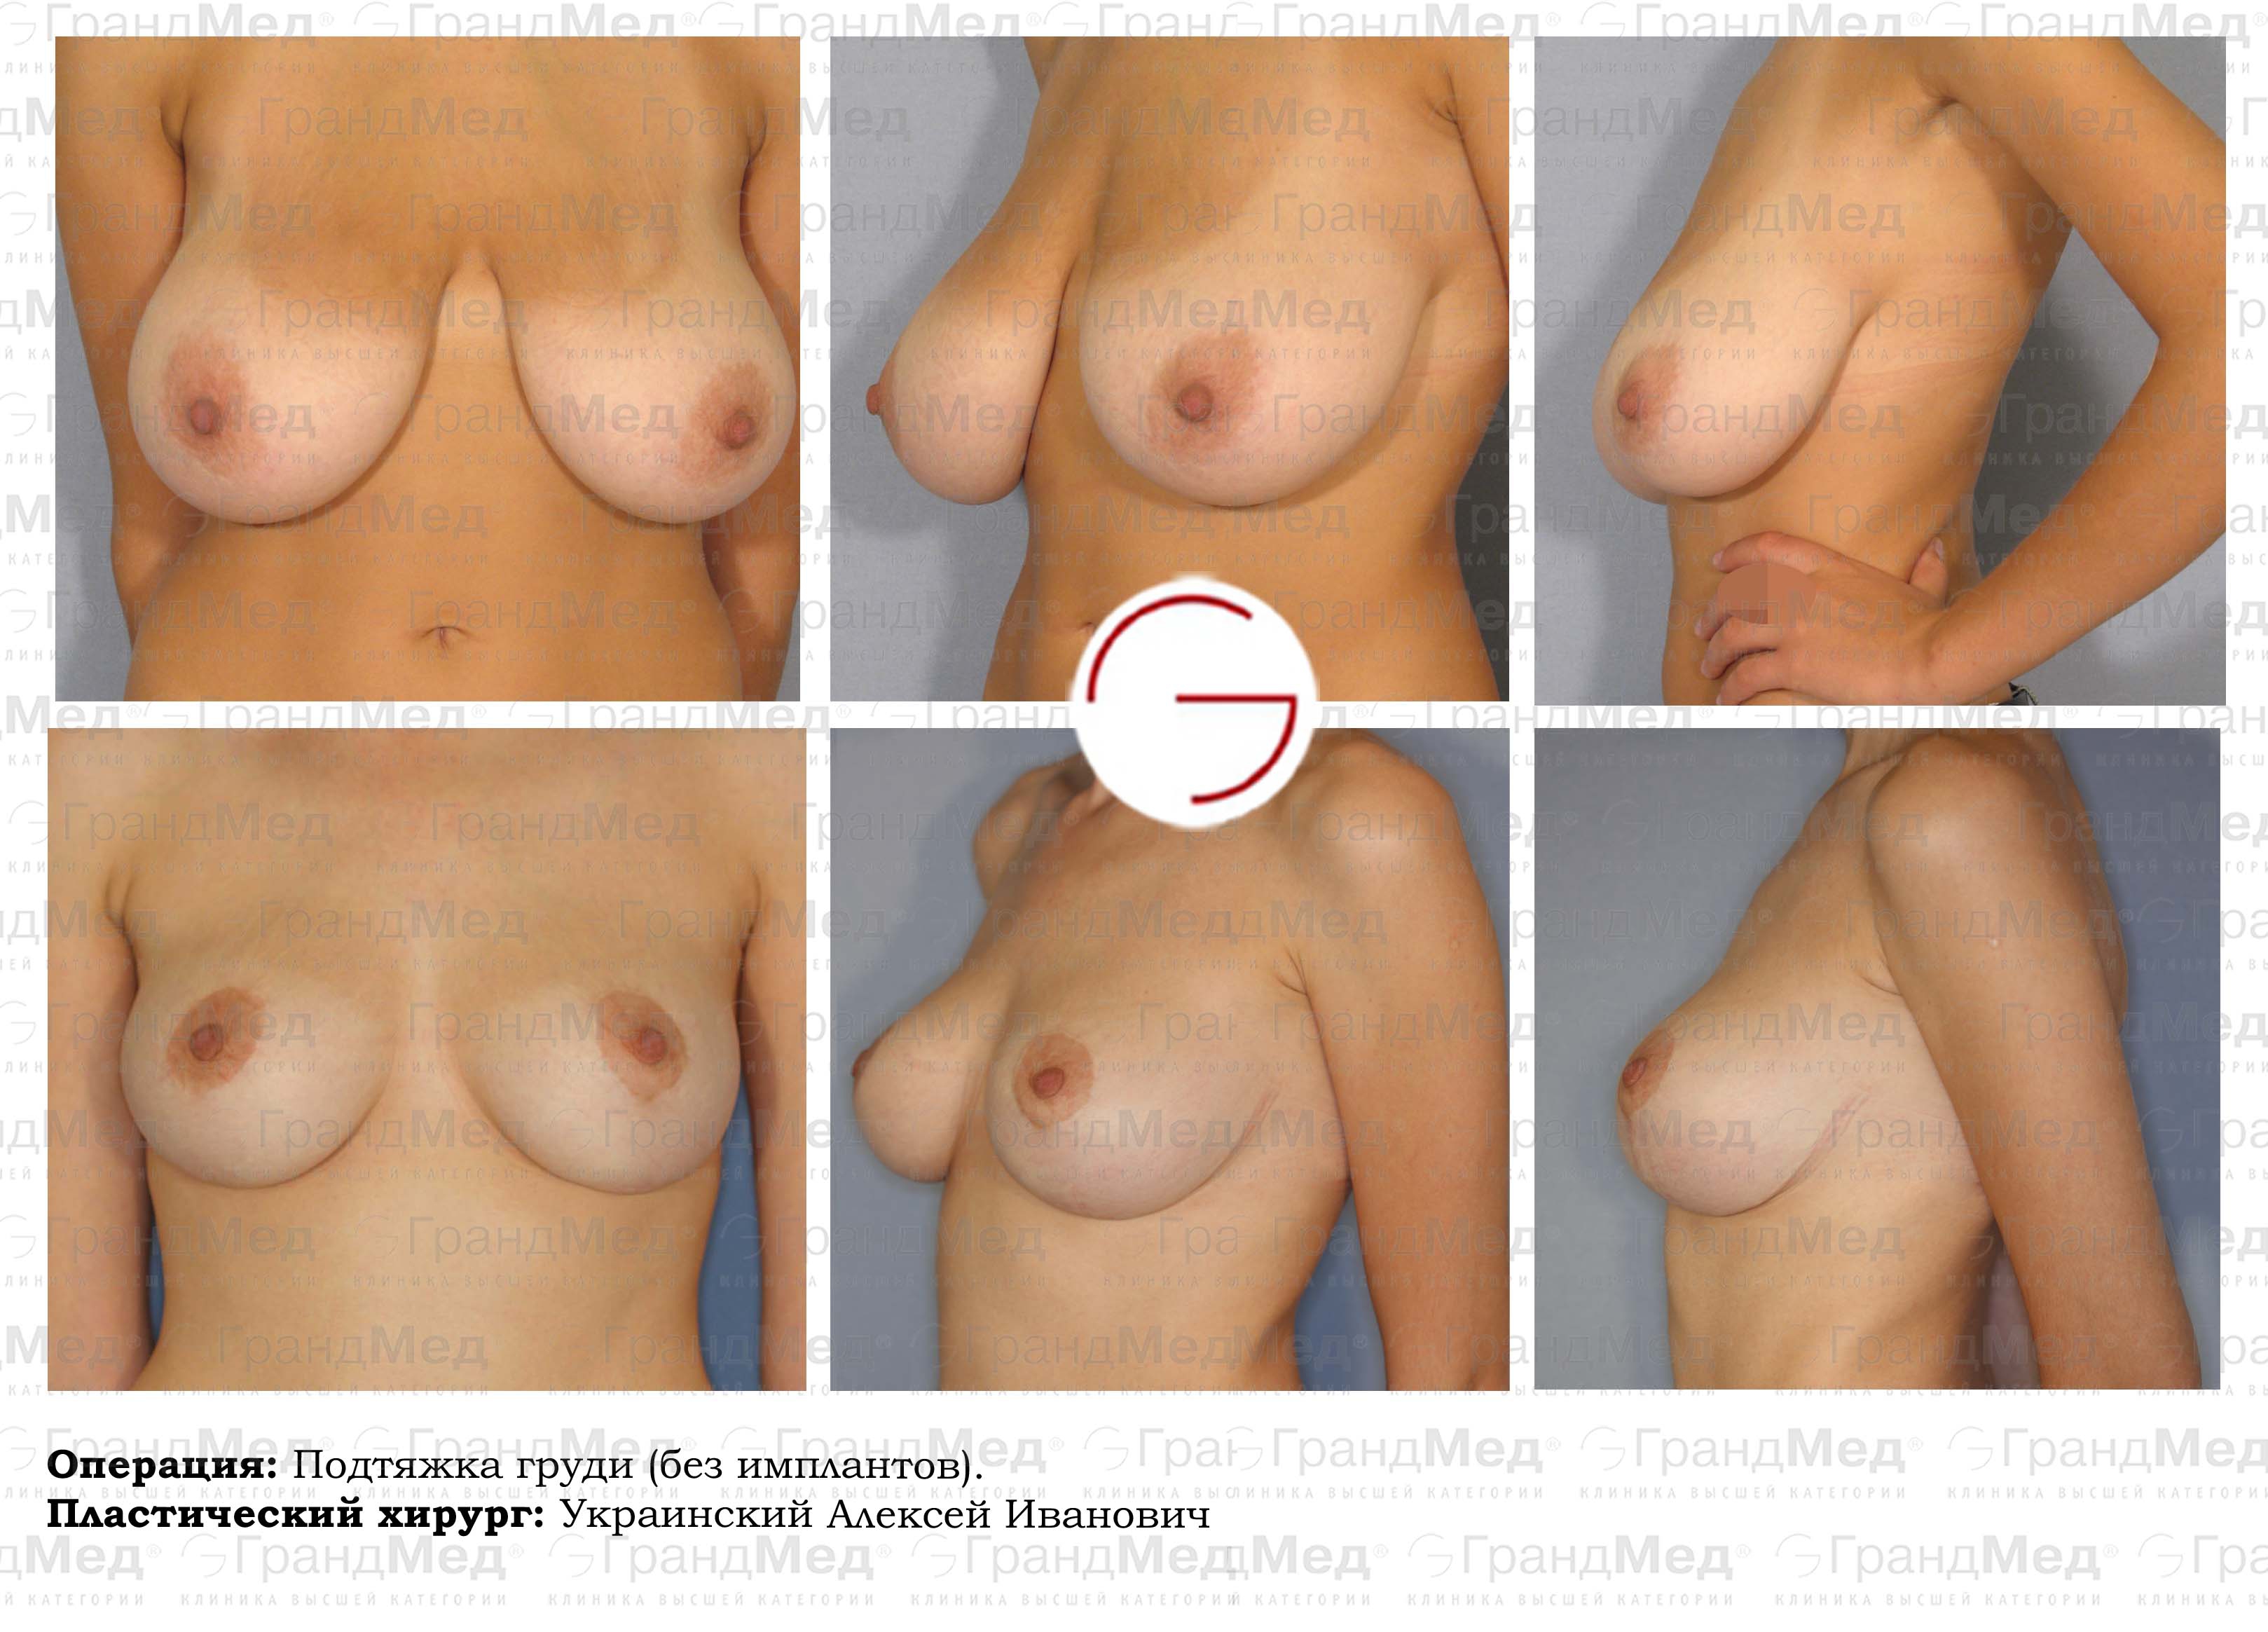 подтяжка груди у женщин фото 7